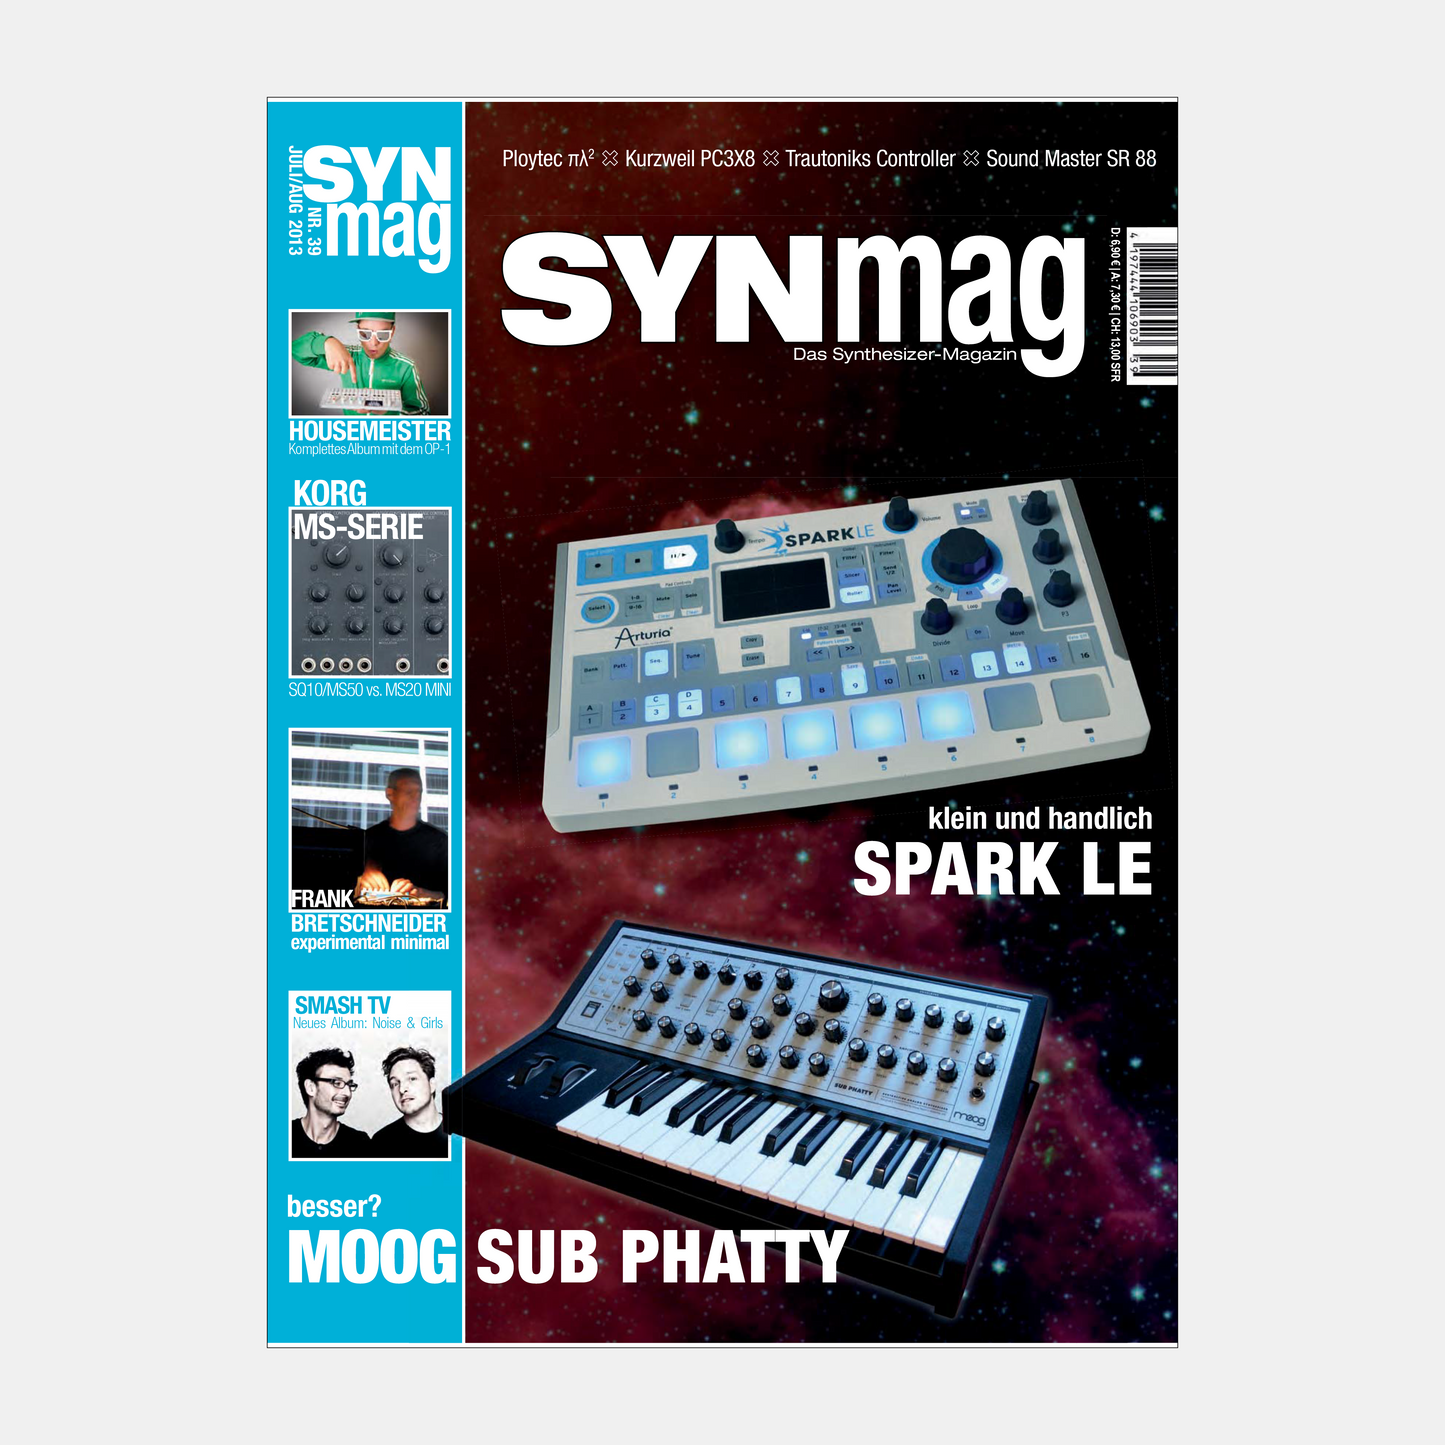 Synmag | Ausgaben 36 bis 40 im Paket | ePaper